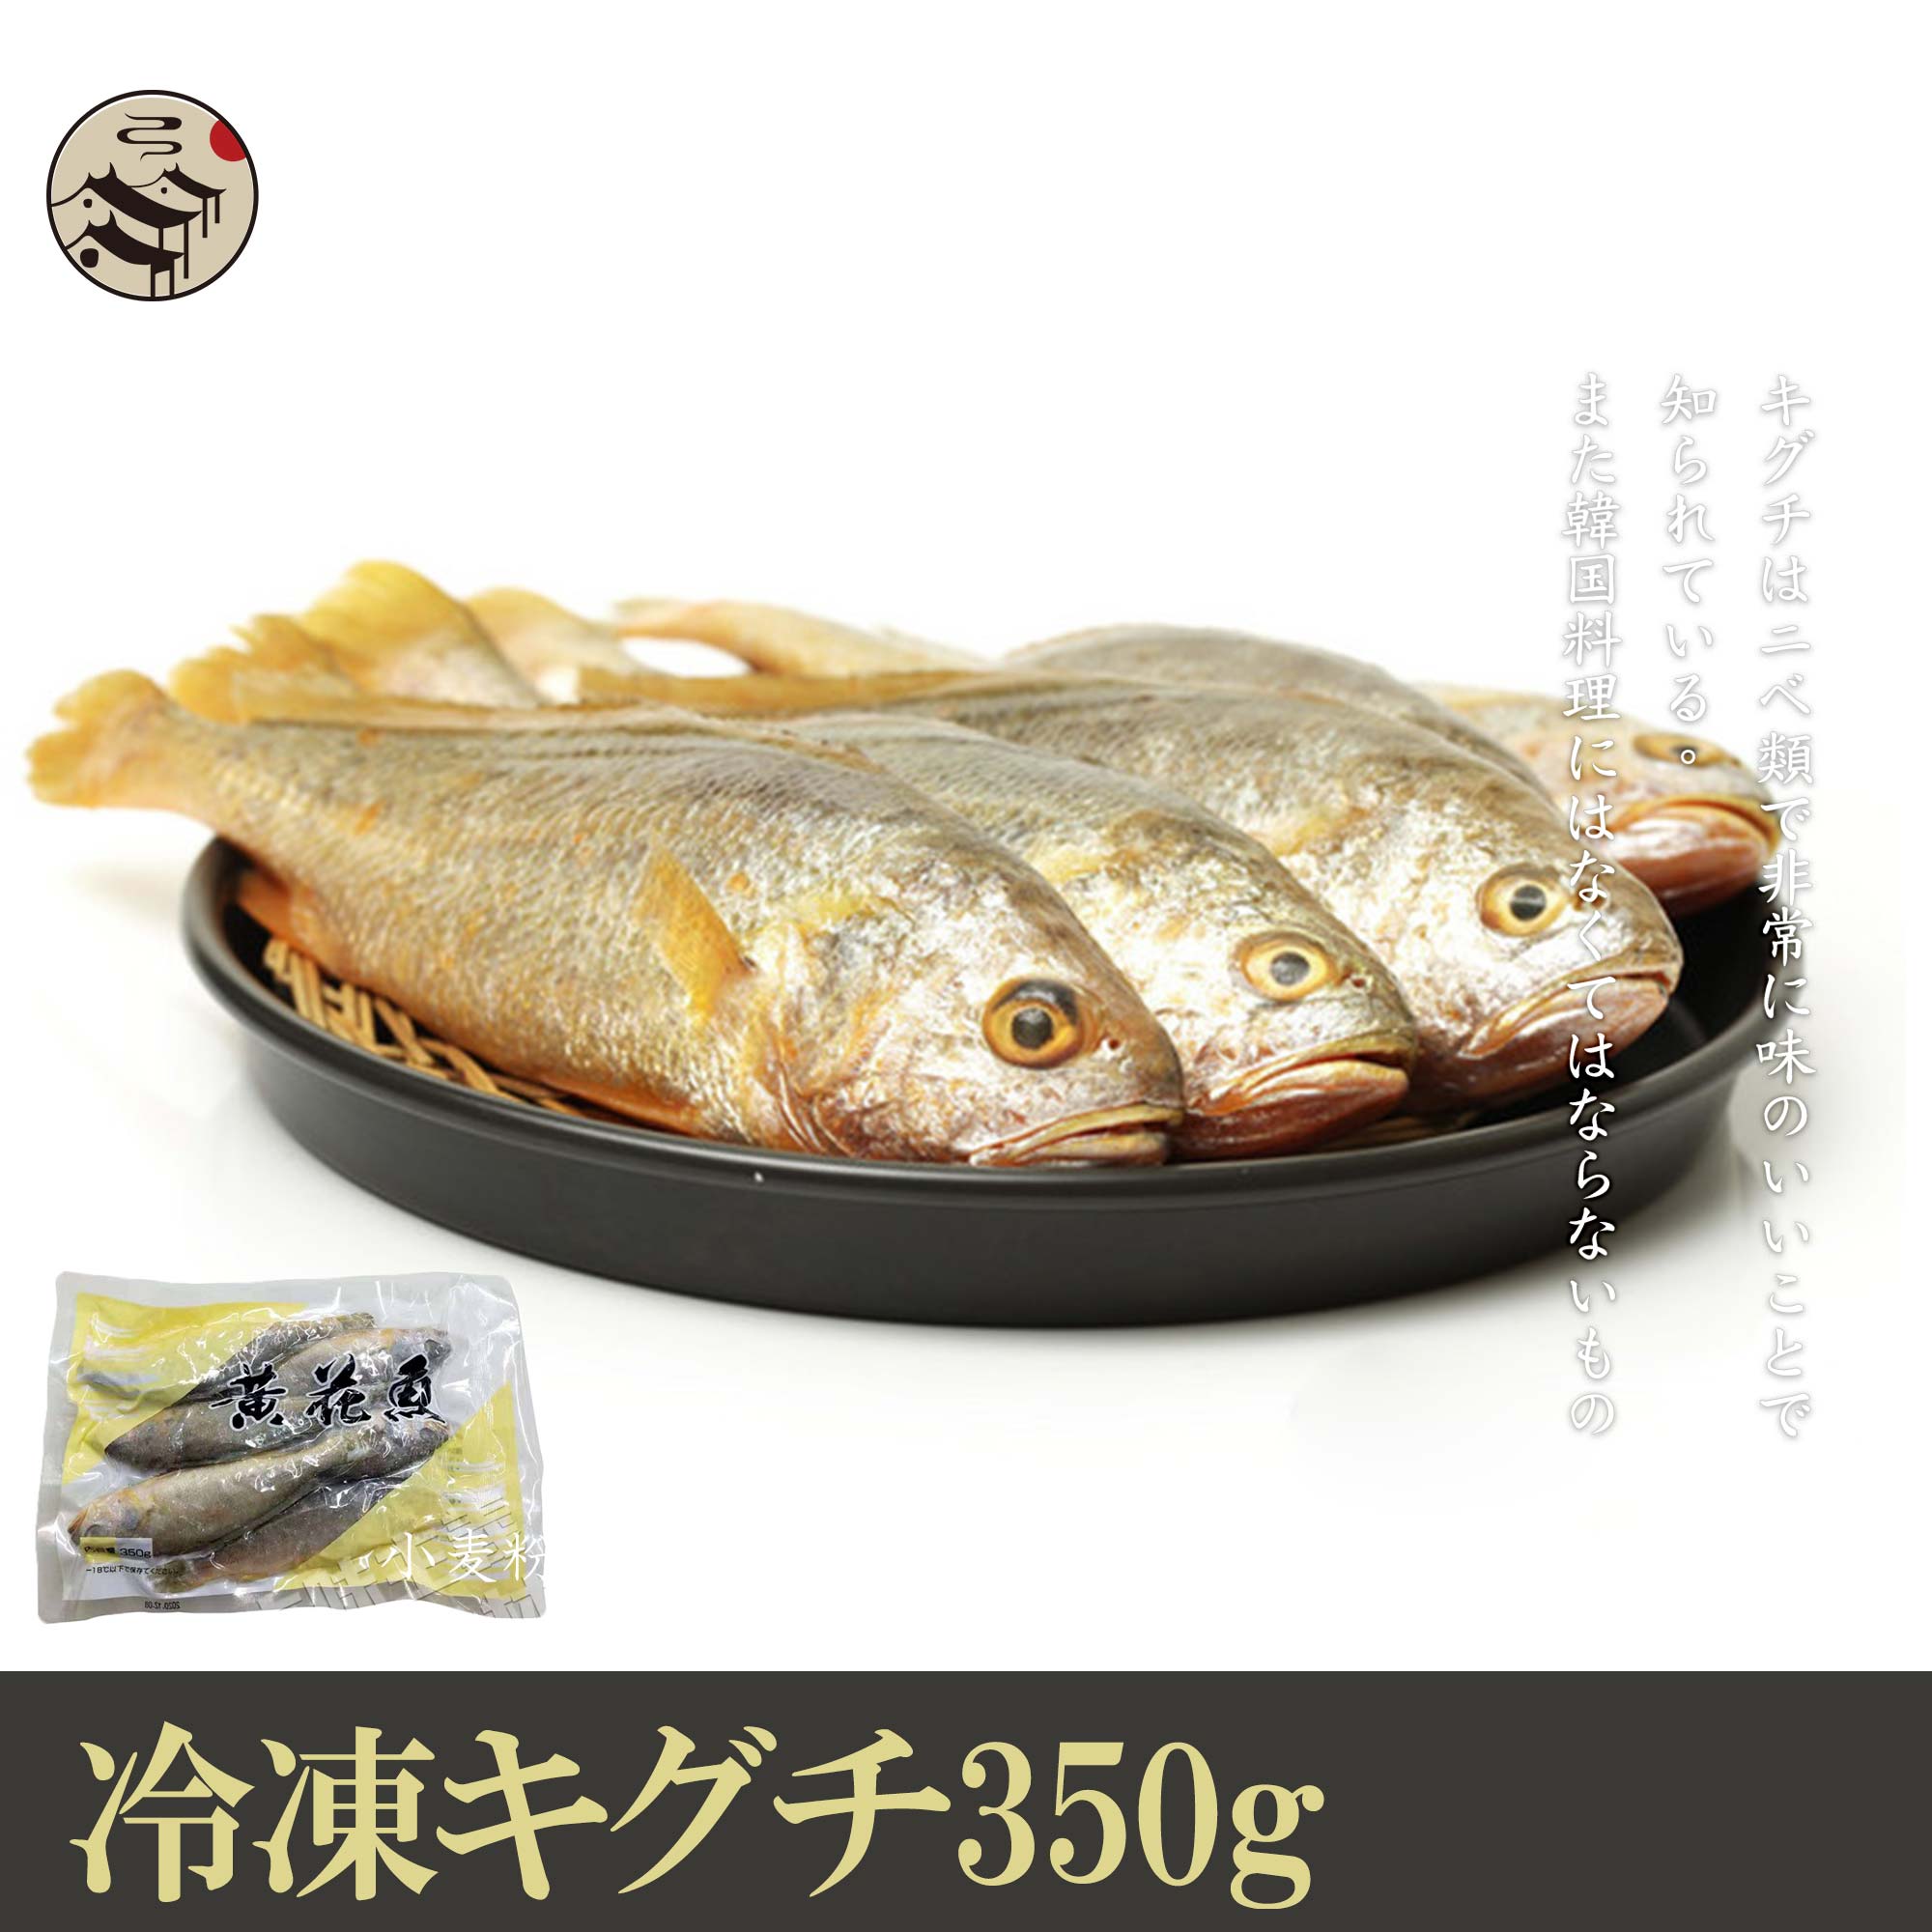 冷凍キグチ350g 魚 冷凍魚 冷凍食品 買い物 魚料理